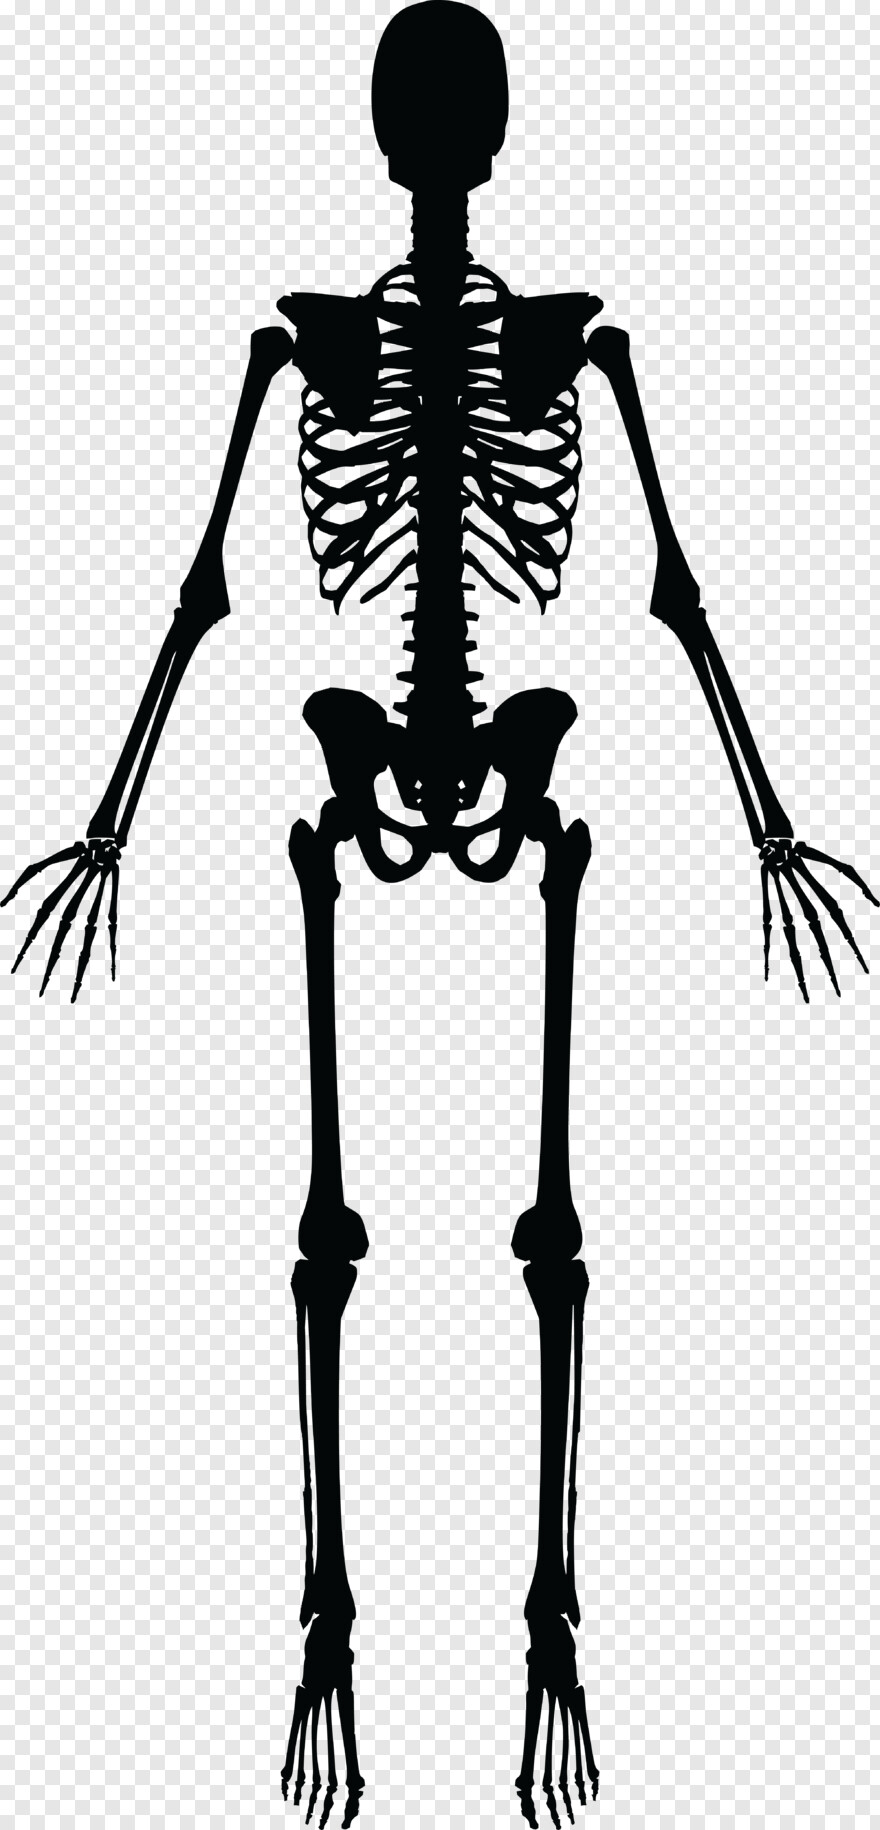  Skeleton, Skeleton Head, Skeleton Hand, Skeleton Arm, Skeleton Key